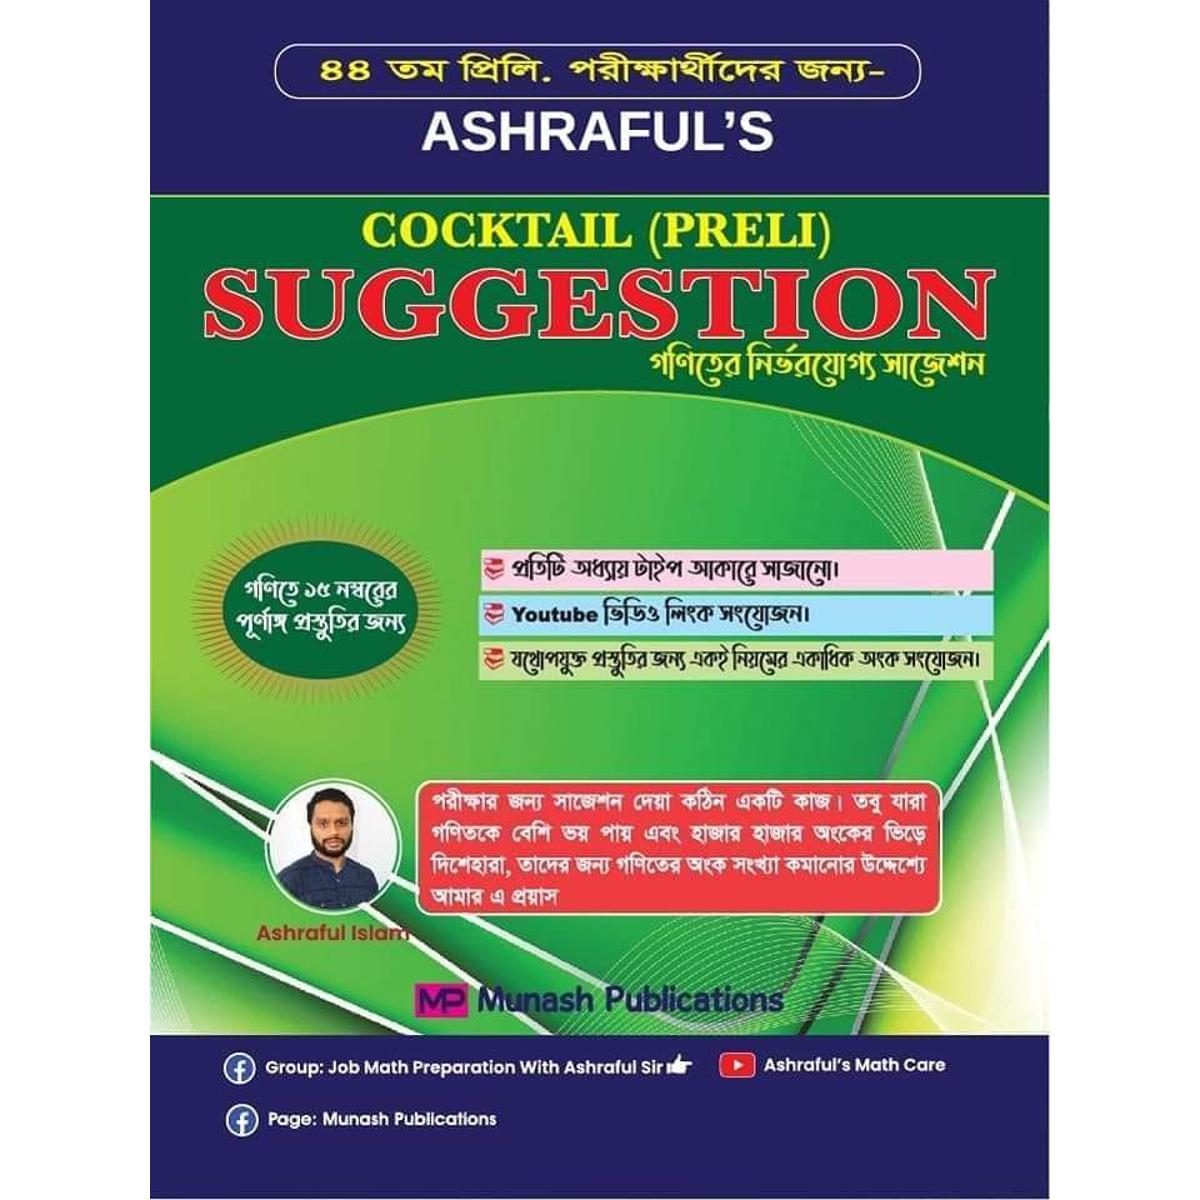 Ashraful's Math Suggestion (Cocktail Preli)